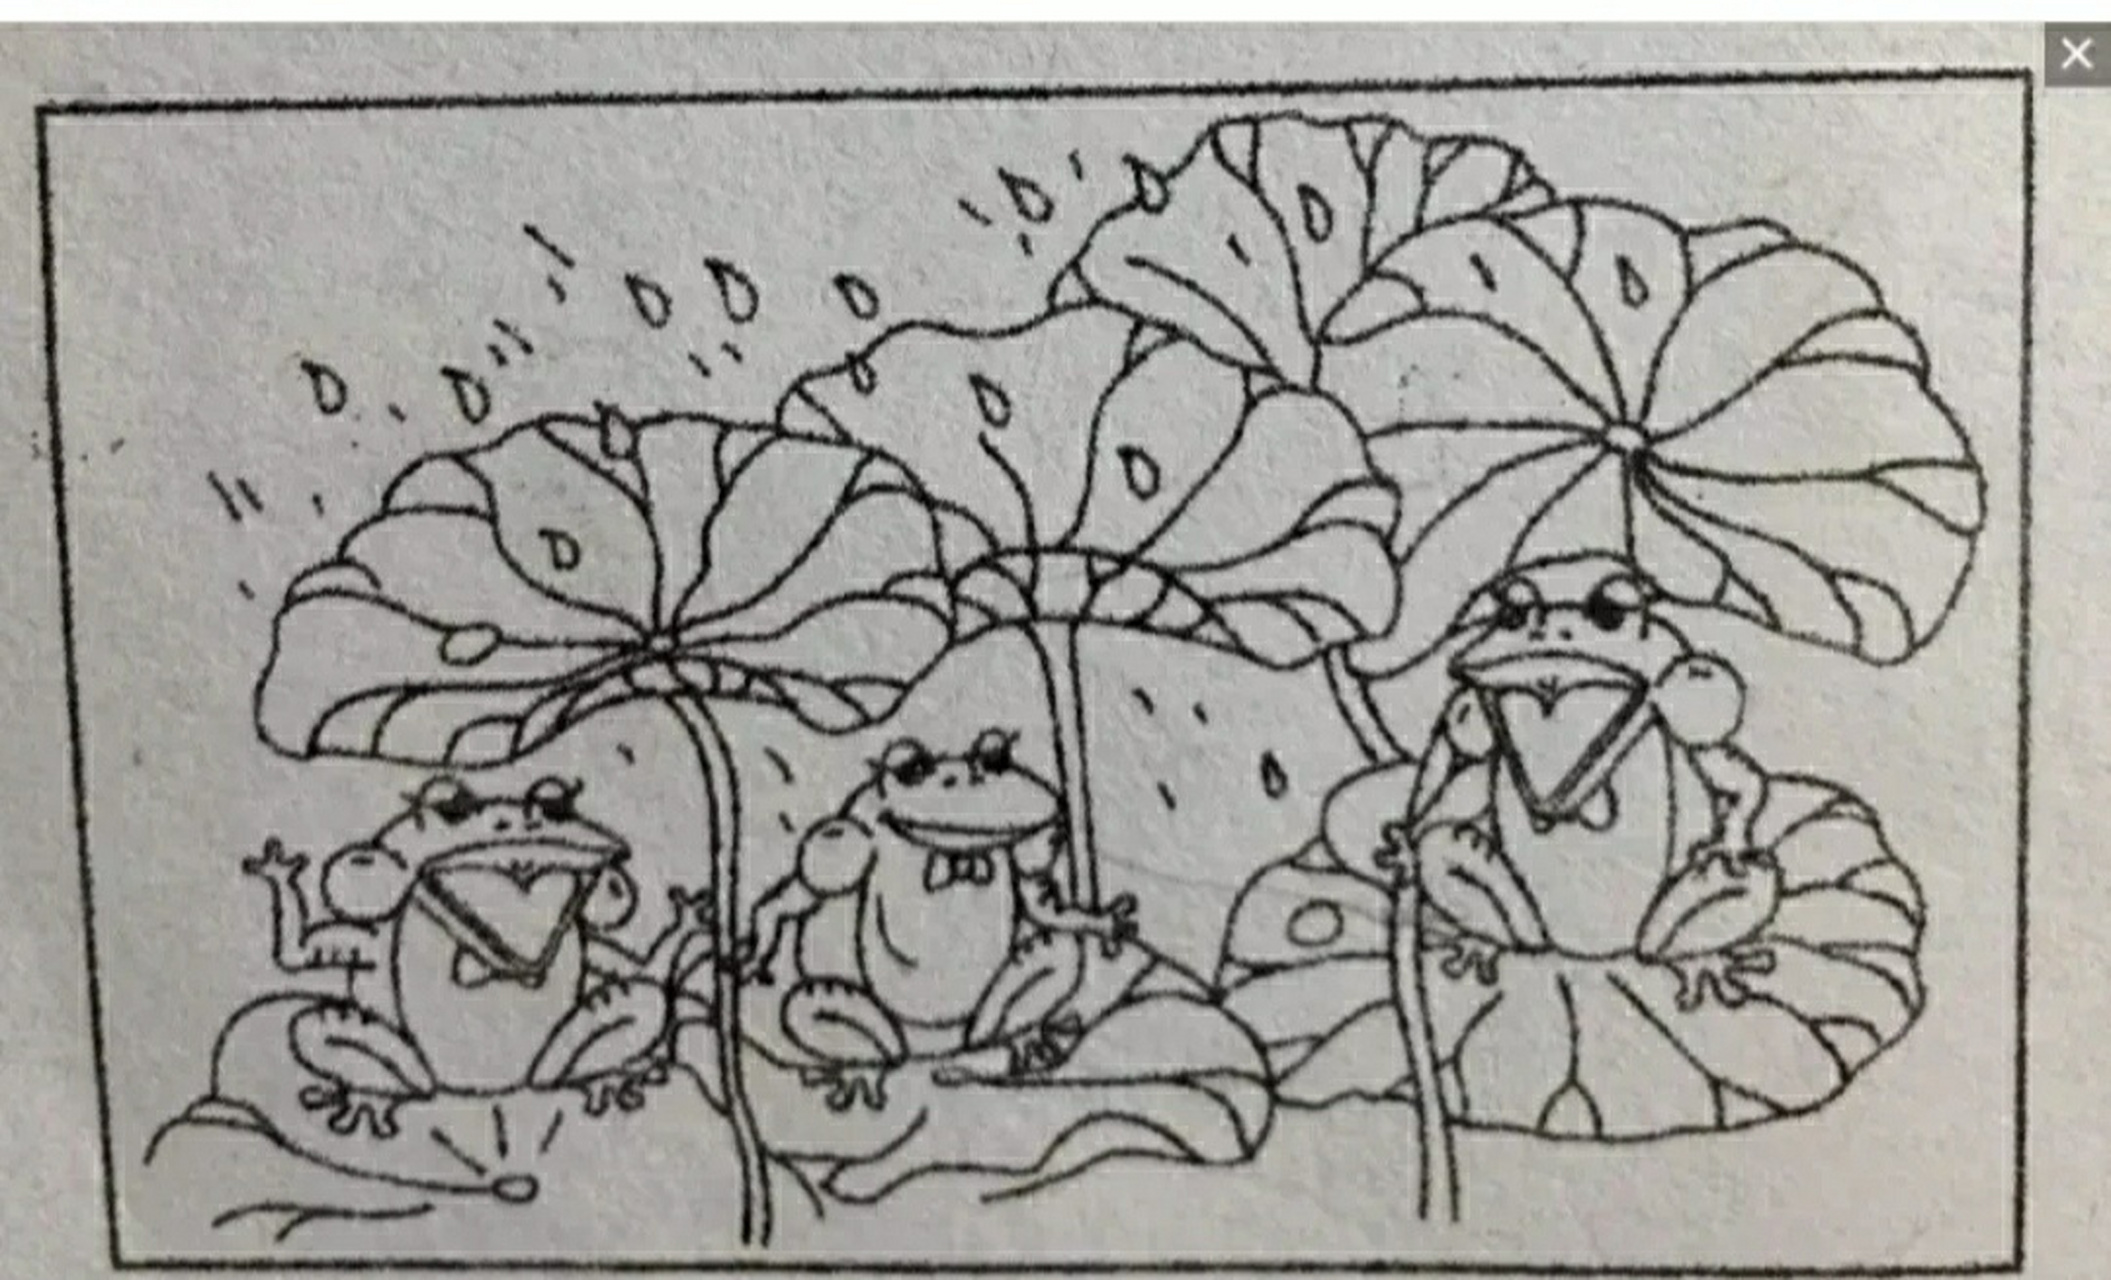 看图写话 青蛙躲雨 荷叶伞 夏天的午后,几只小青蛙在散发着淡淡的香气